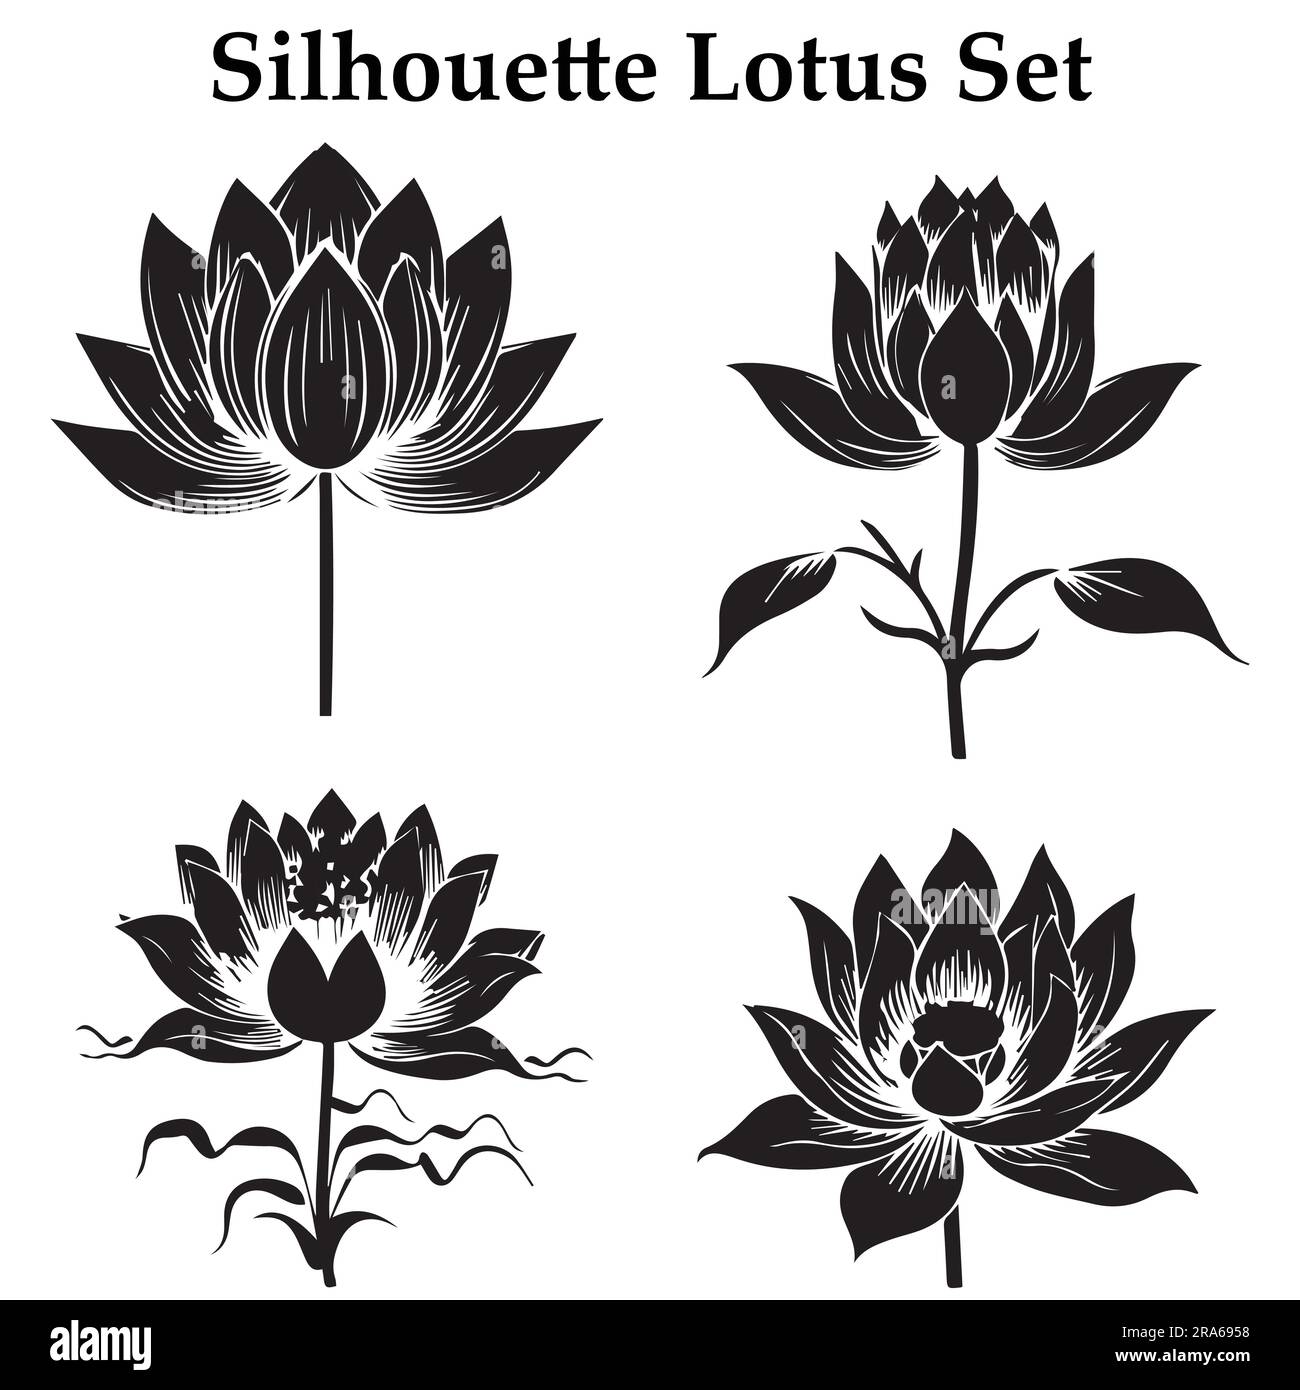 Eine Darstellung der Silhouette Lotus-Blume Stock Vektor